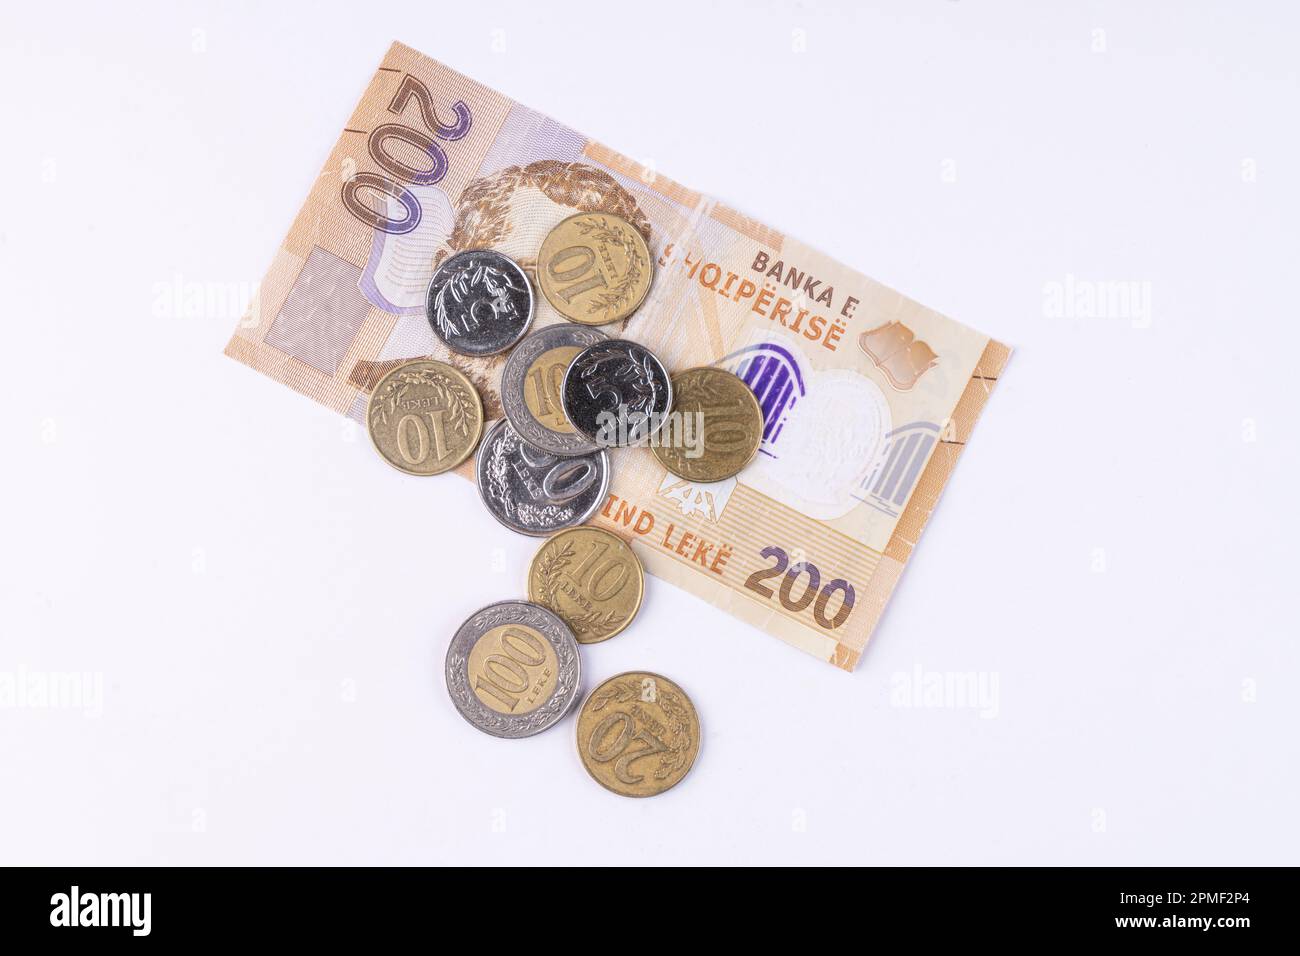 Quelques pièces de monnaie et un billet de banque Lek de monnaie albanaise sur une surface blanche Banque D'Images